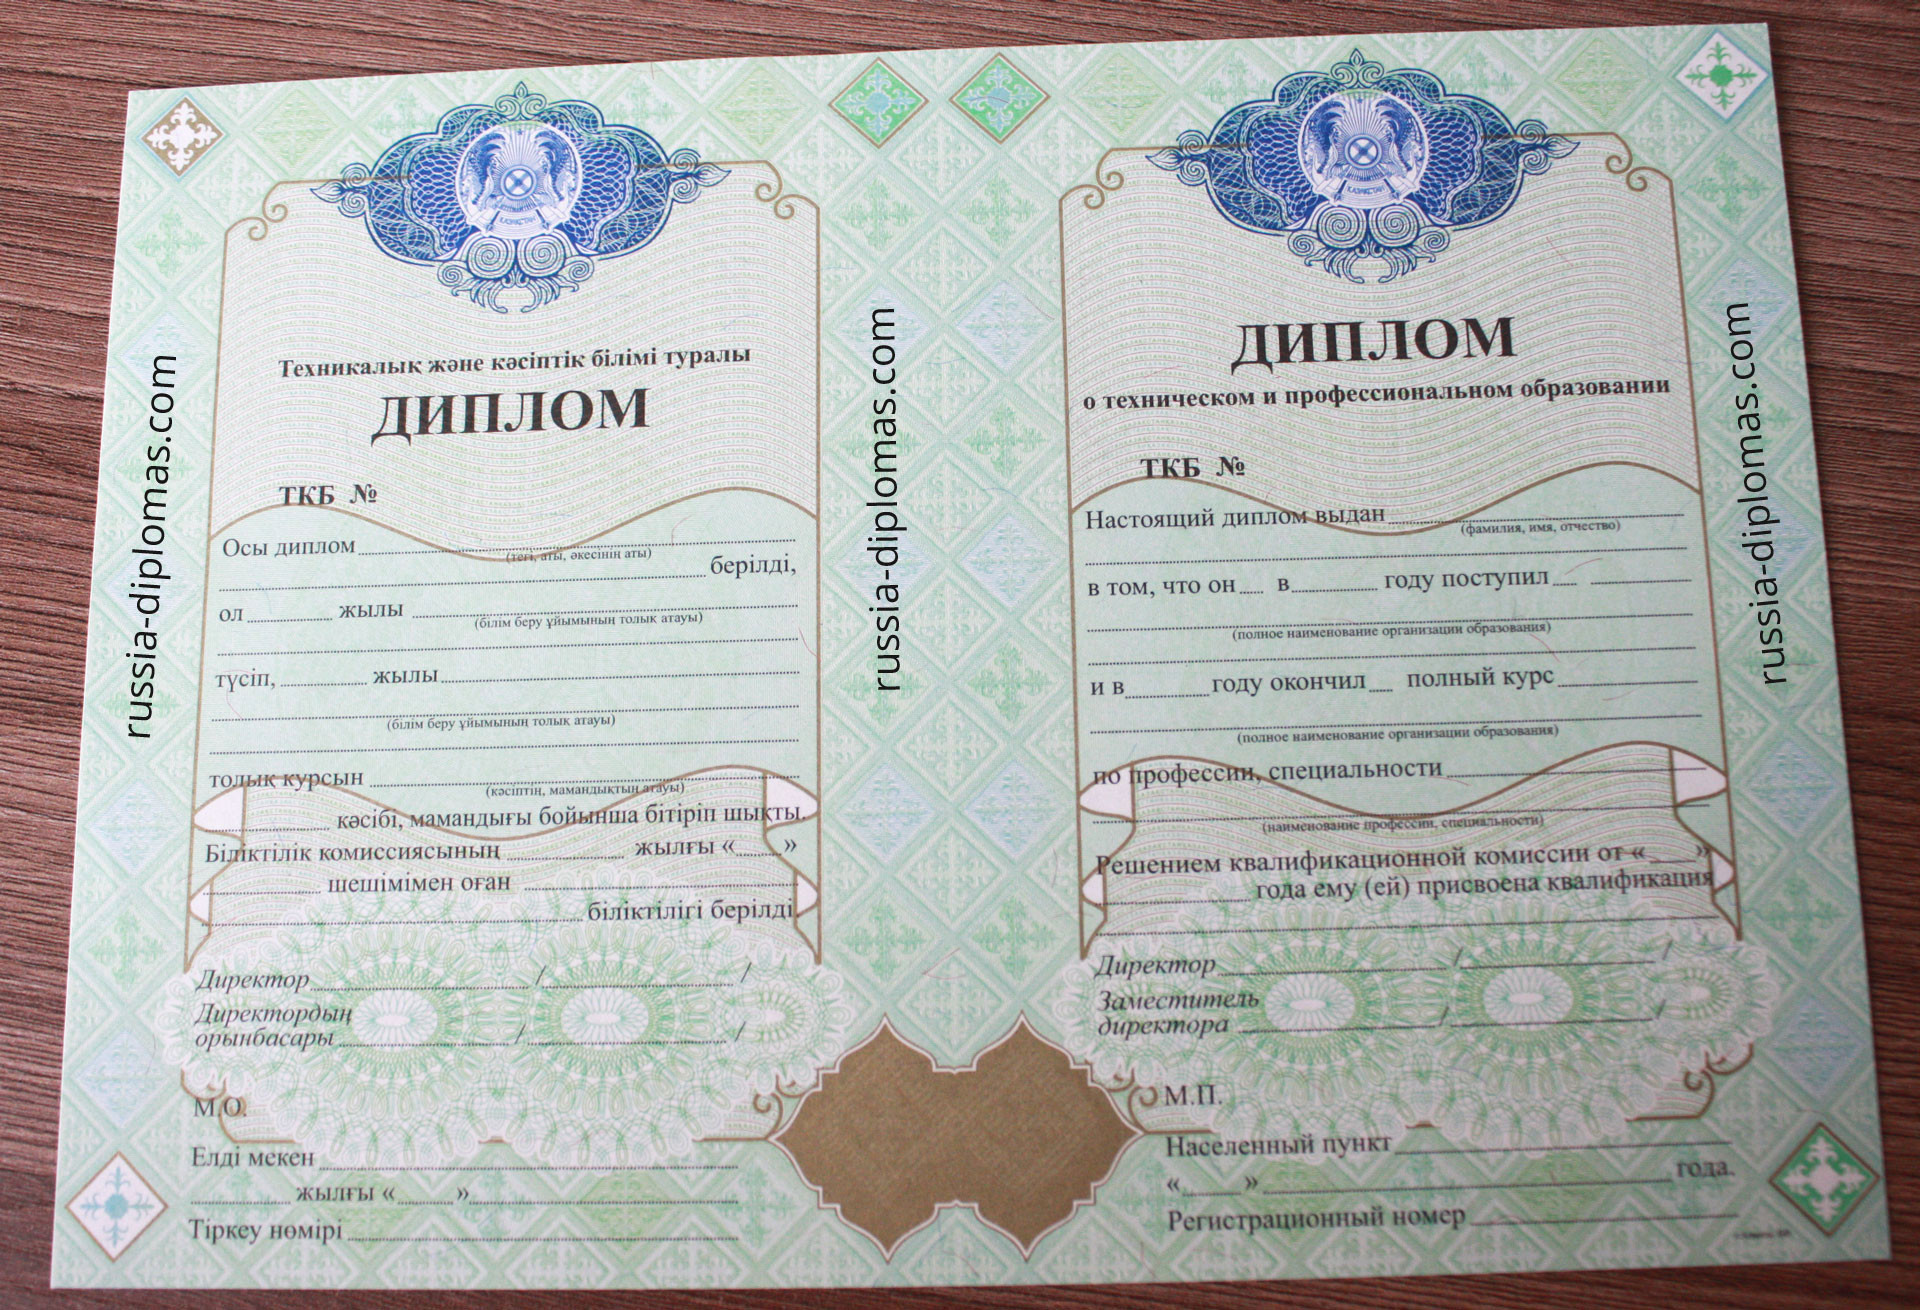 Диплом техникума Казахстана, фото диплома крупным планом